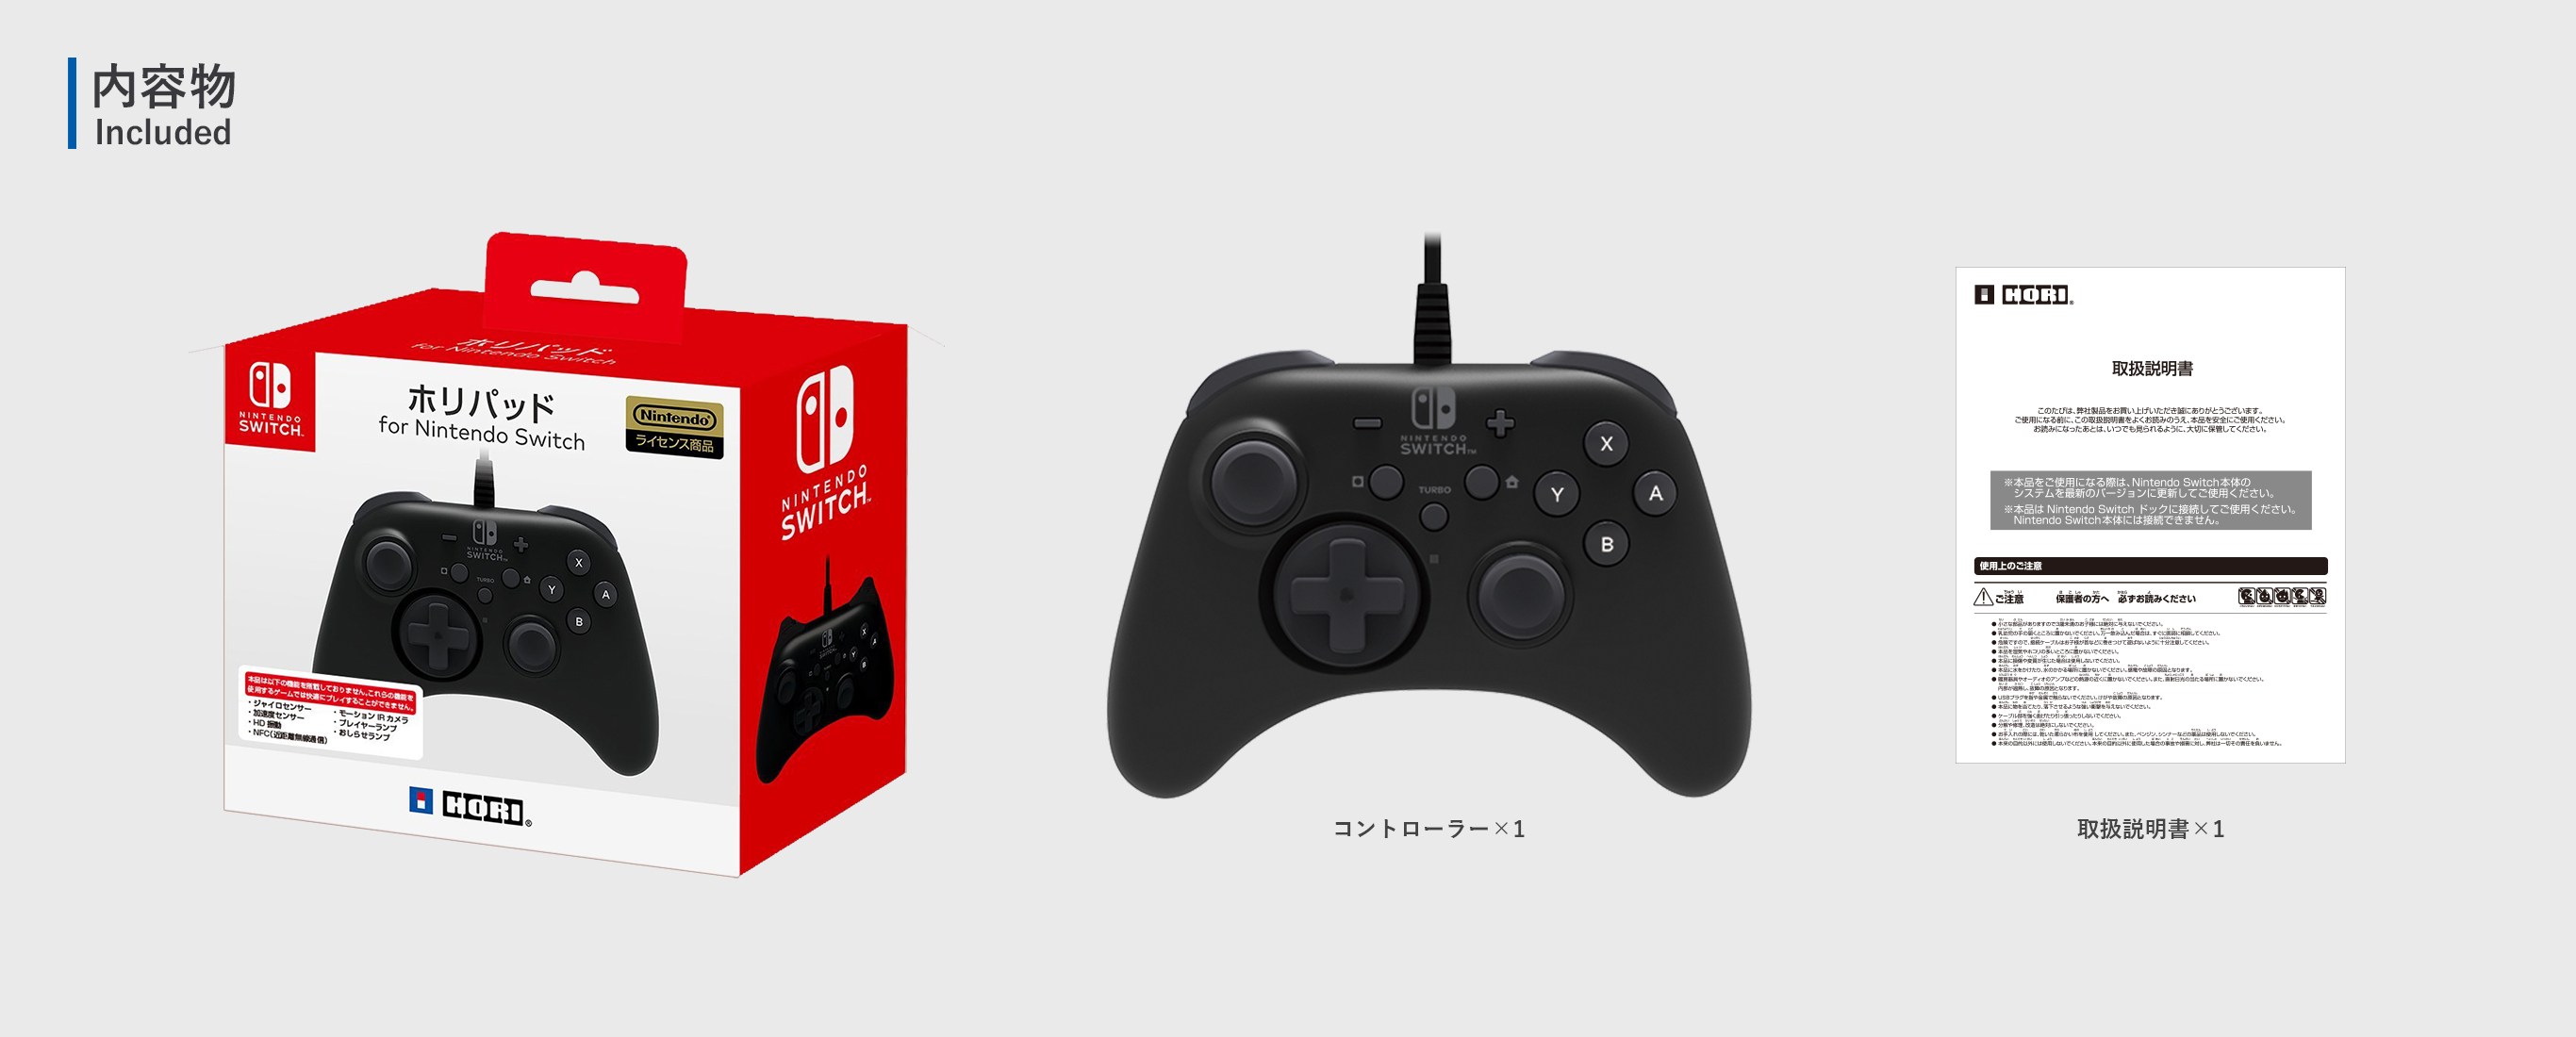 株式会社 HORI | ホリパッド for Nintendo Switch